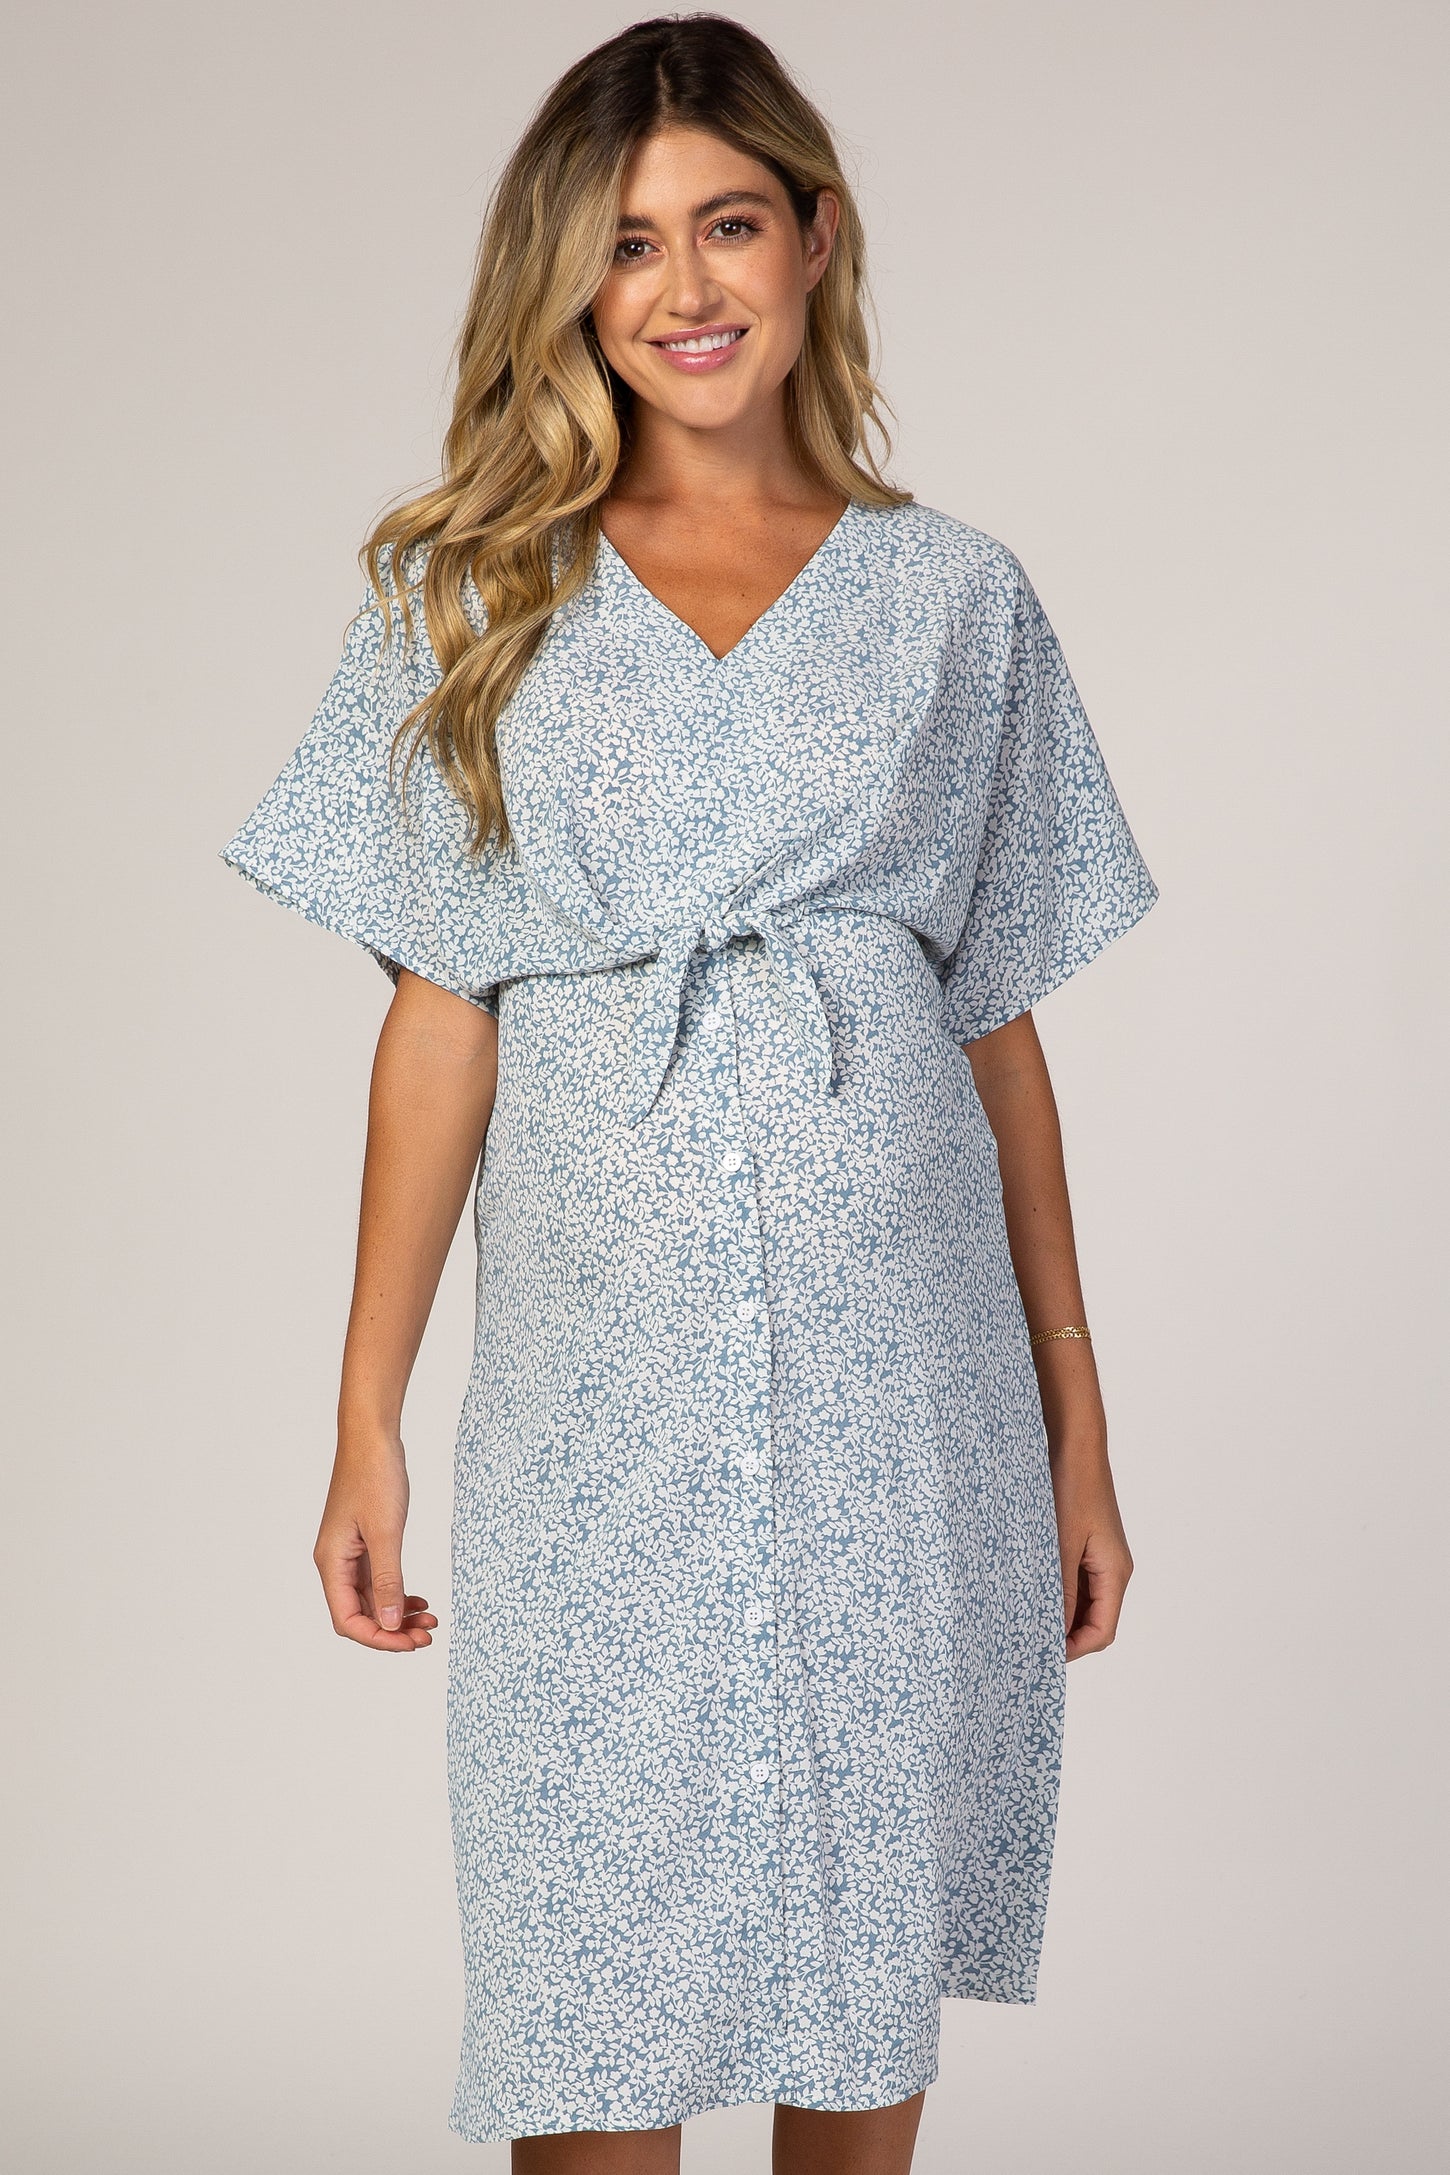 Blue Printed V-Neck Drop Shoulder Maternity Dress